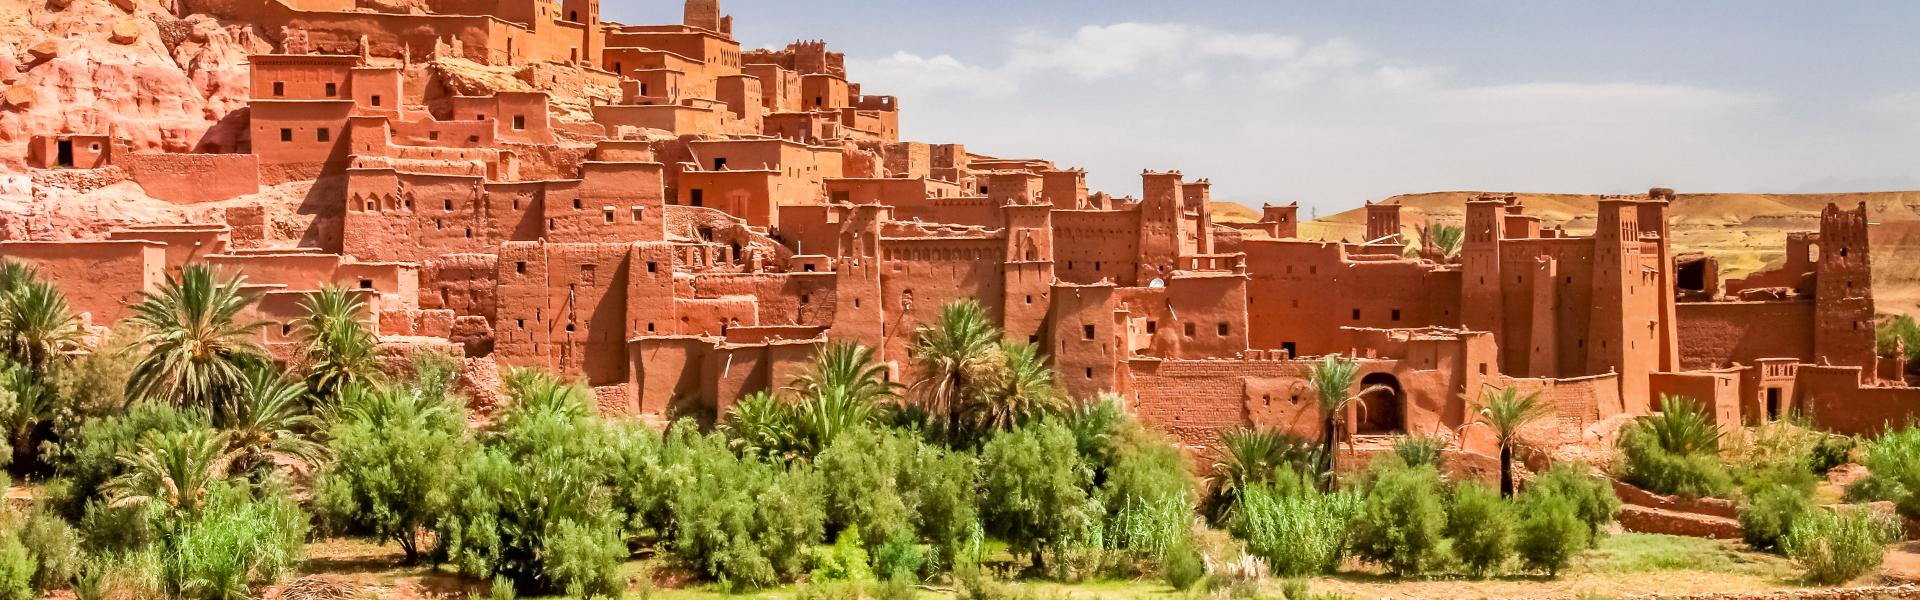 Noclegi i domy w Maroku - HomeToGo